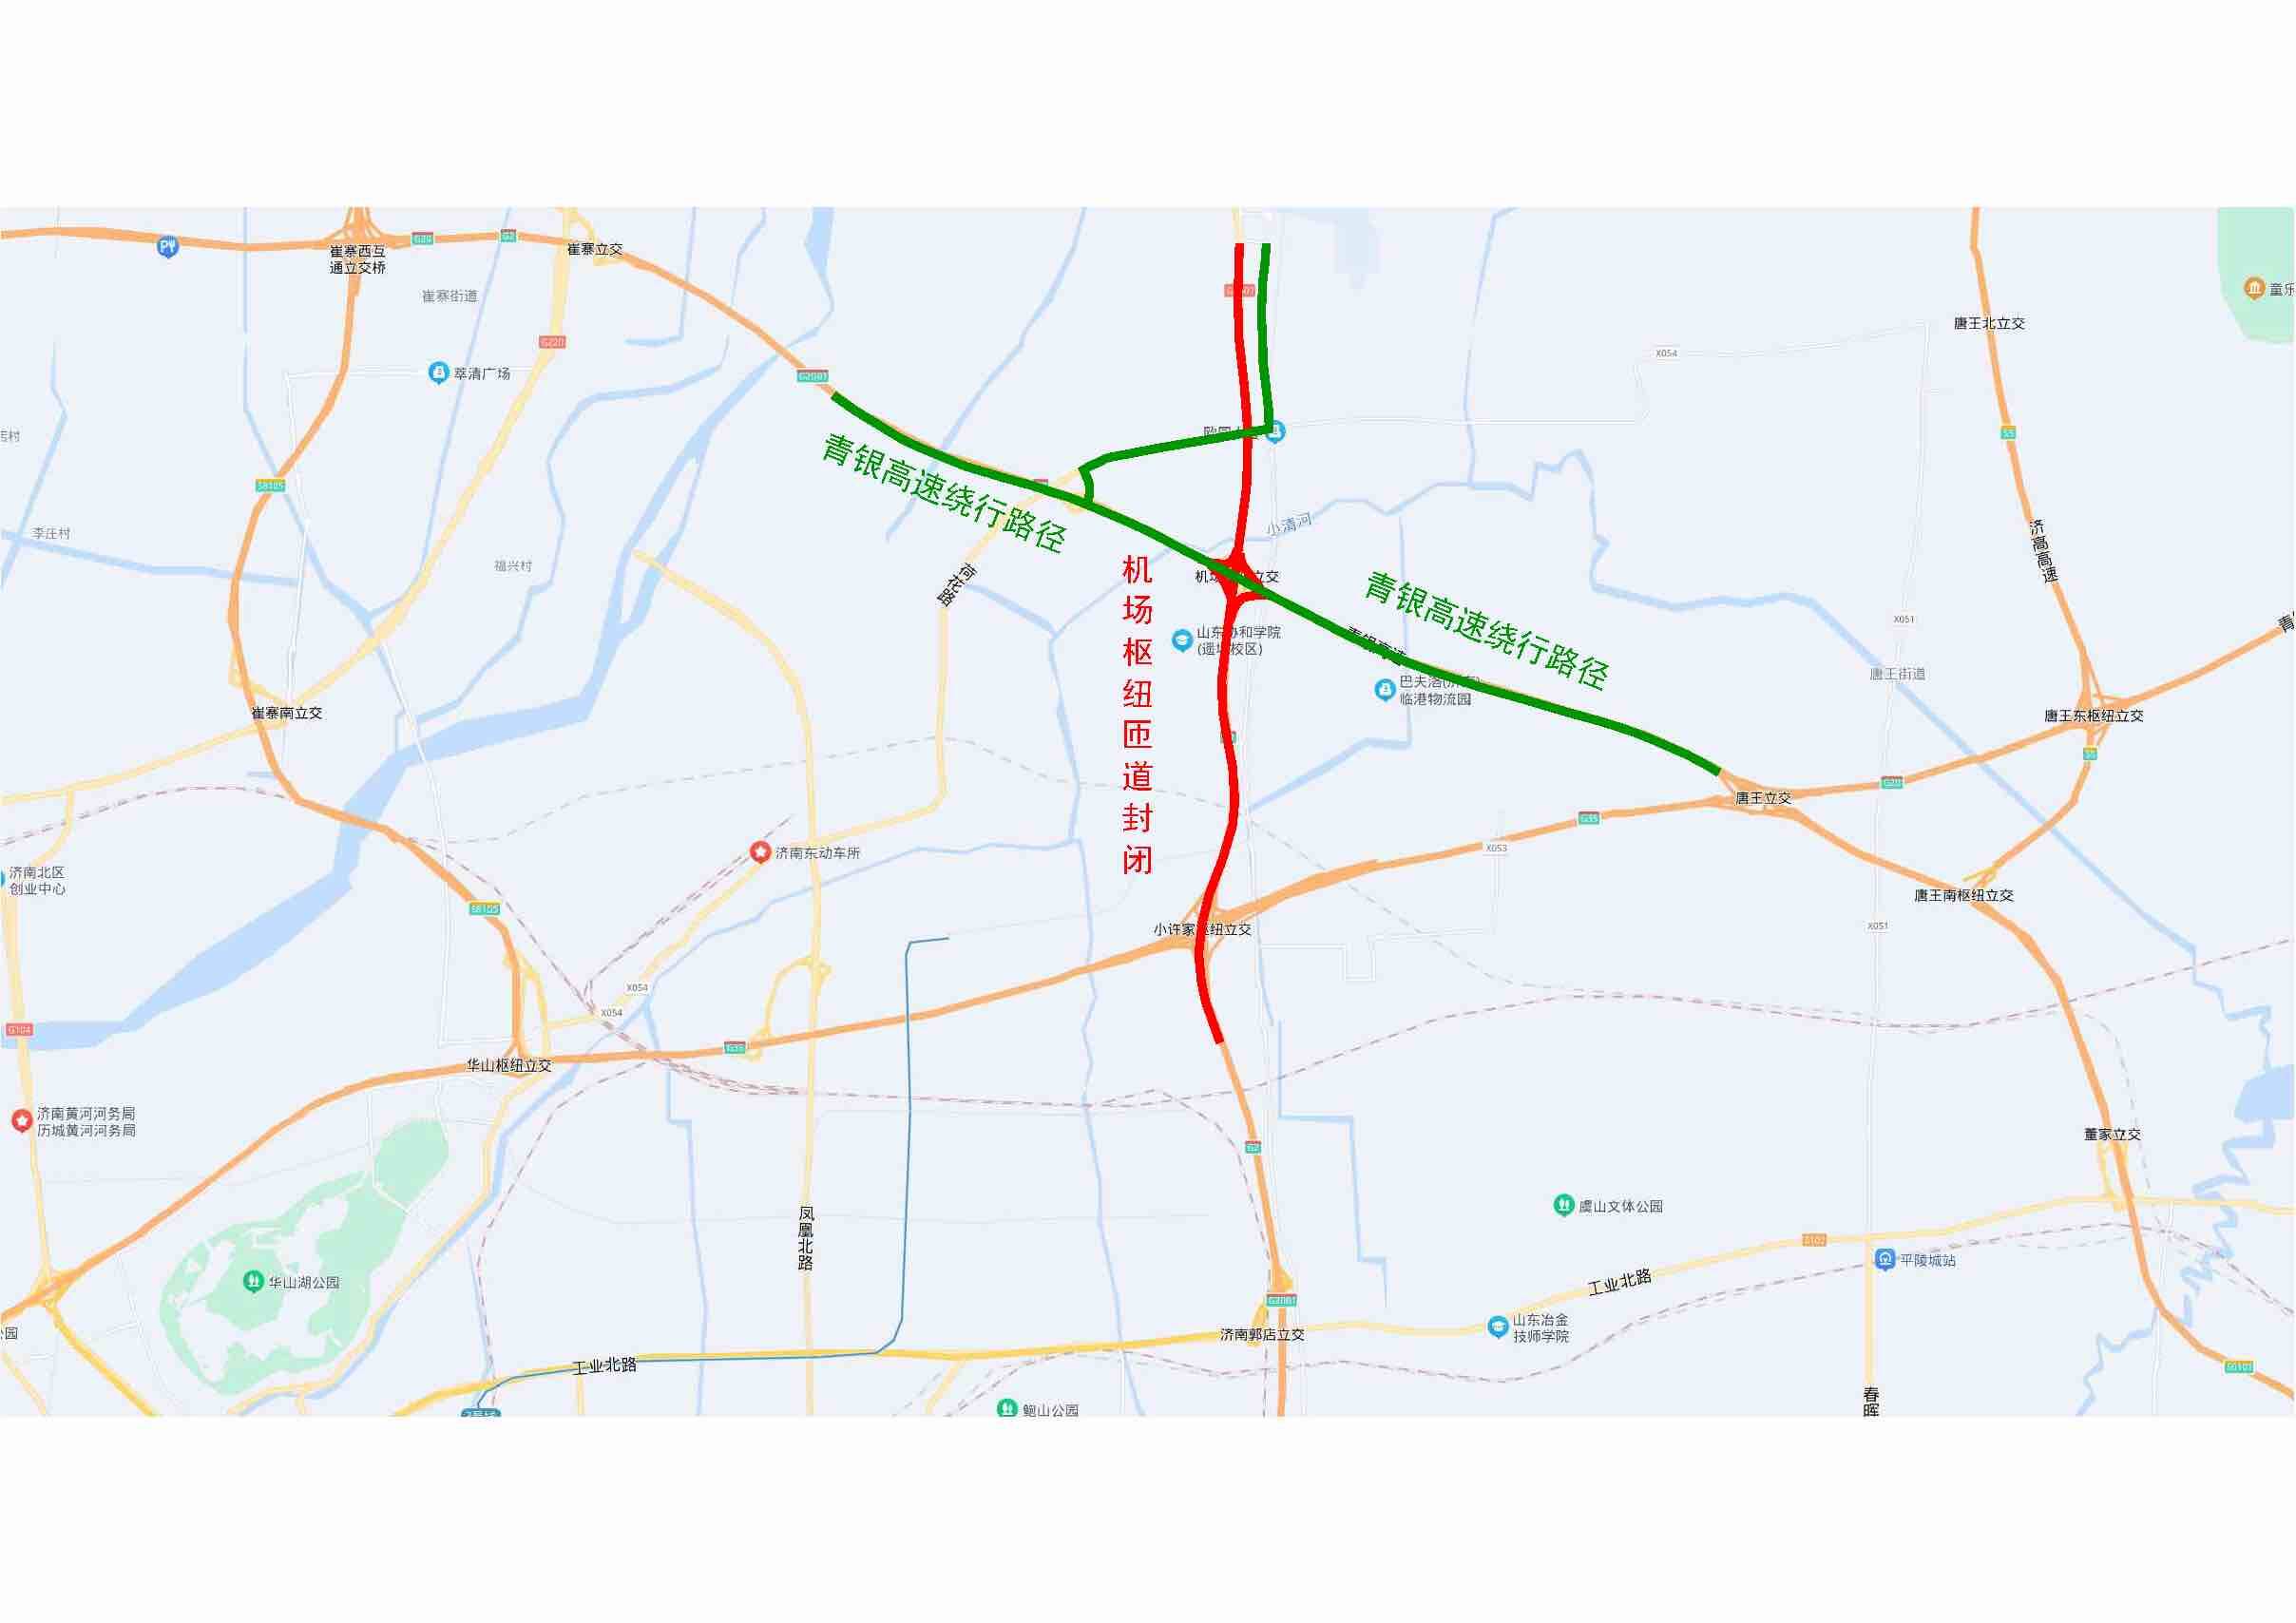 11月22日起济南东部这一重要路段封闭施工 涉及济南绕城高速机场枢纽